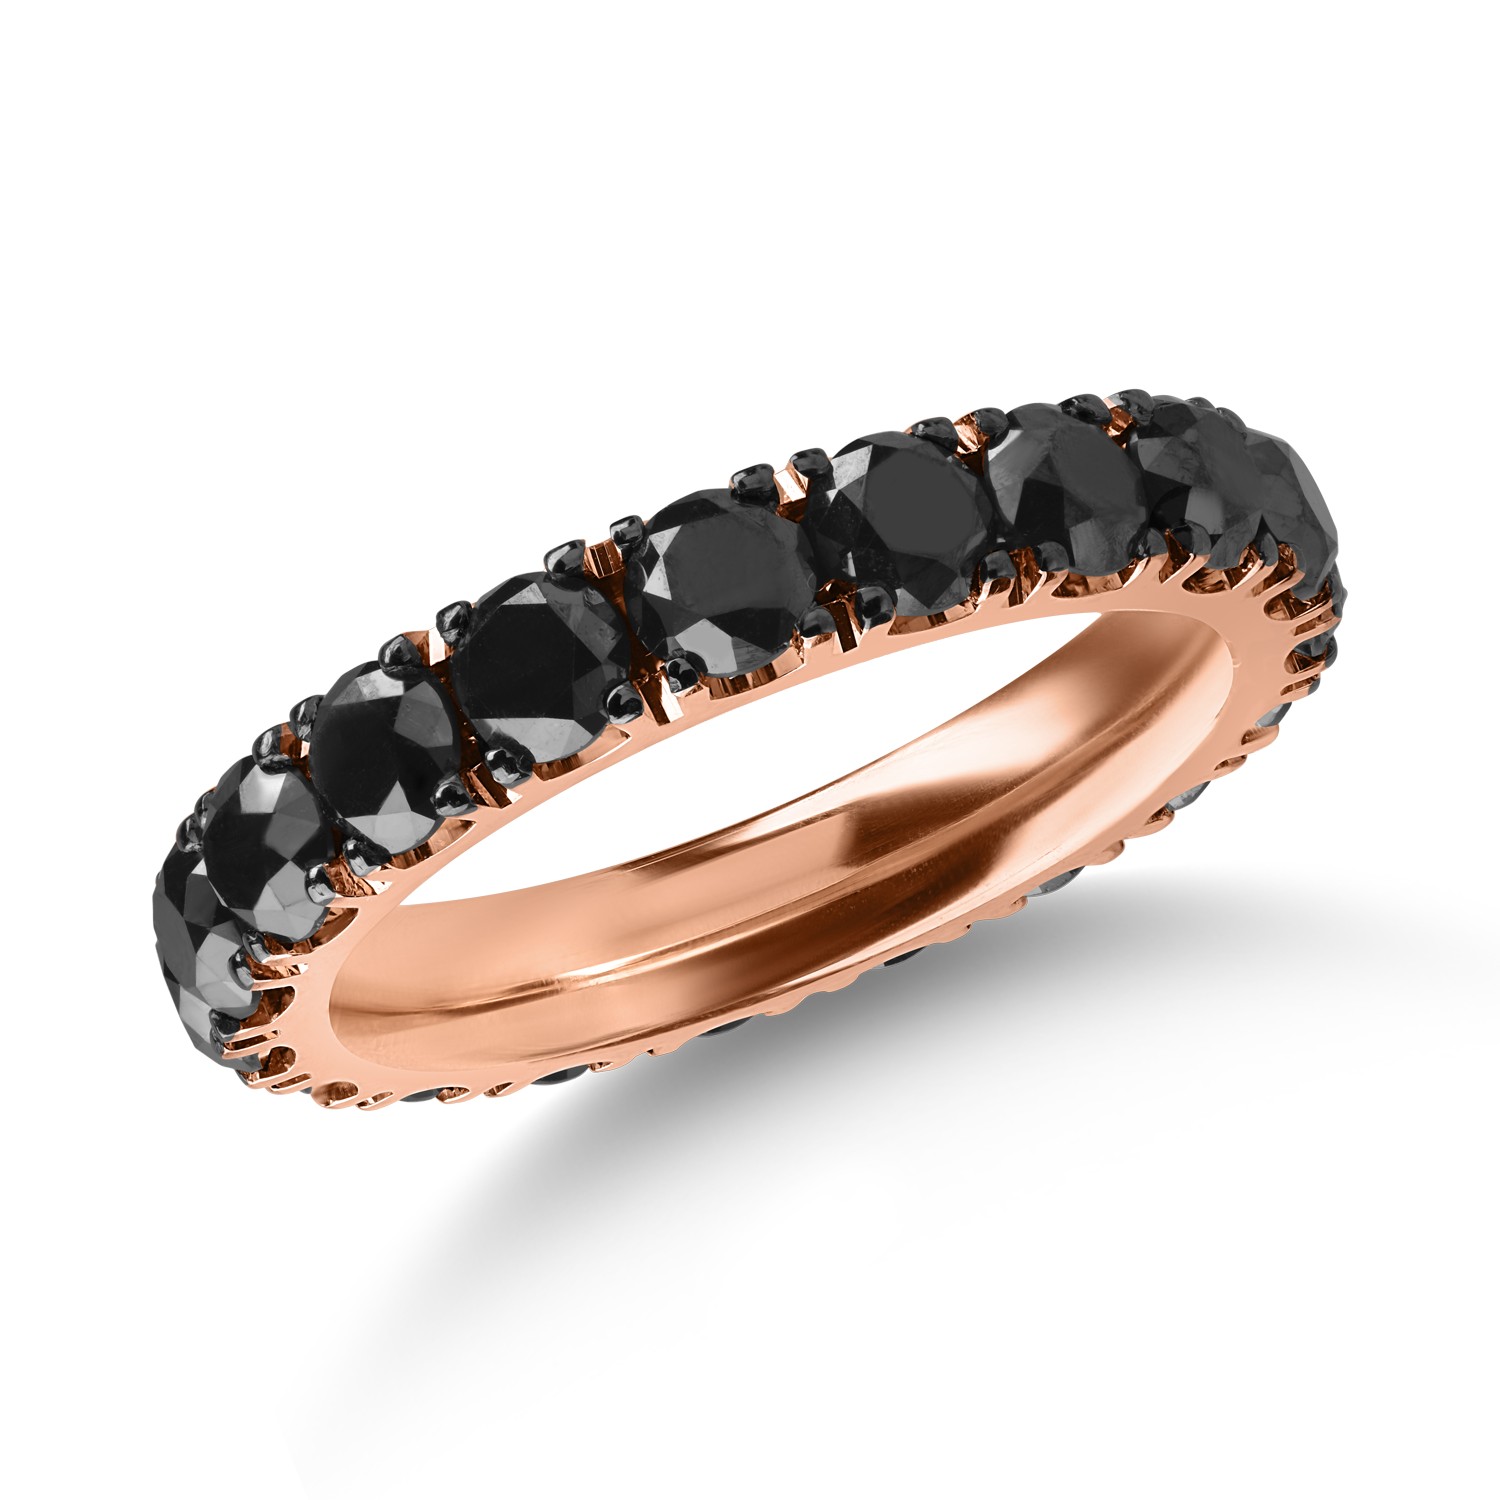 Örökkévalóság gyűrű rózsaszín aranyból 3.75ct fekete gyémántokkal